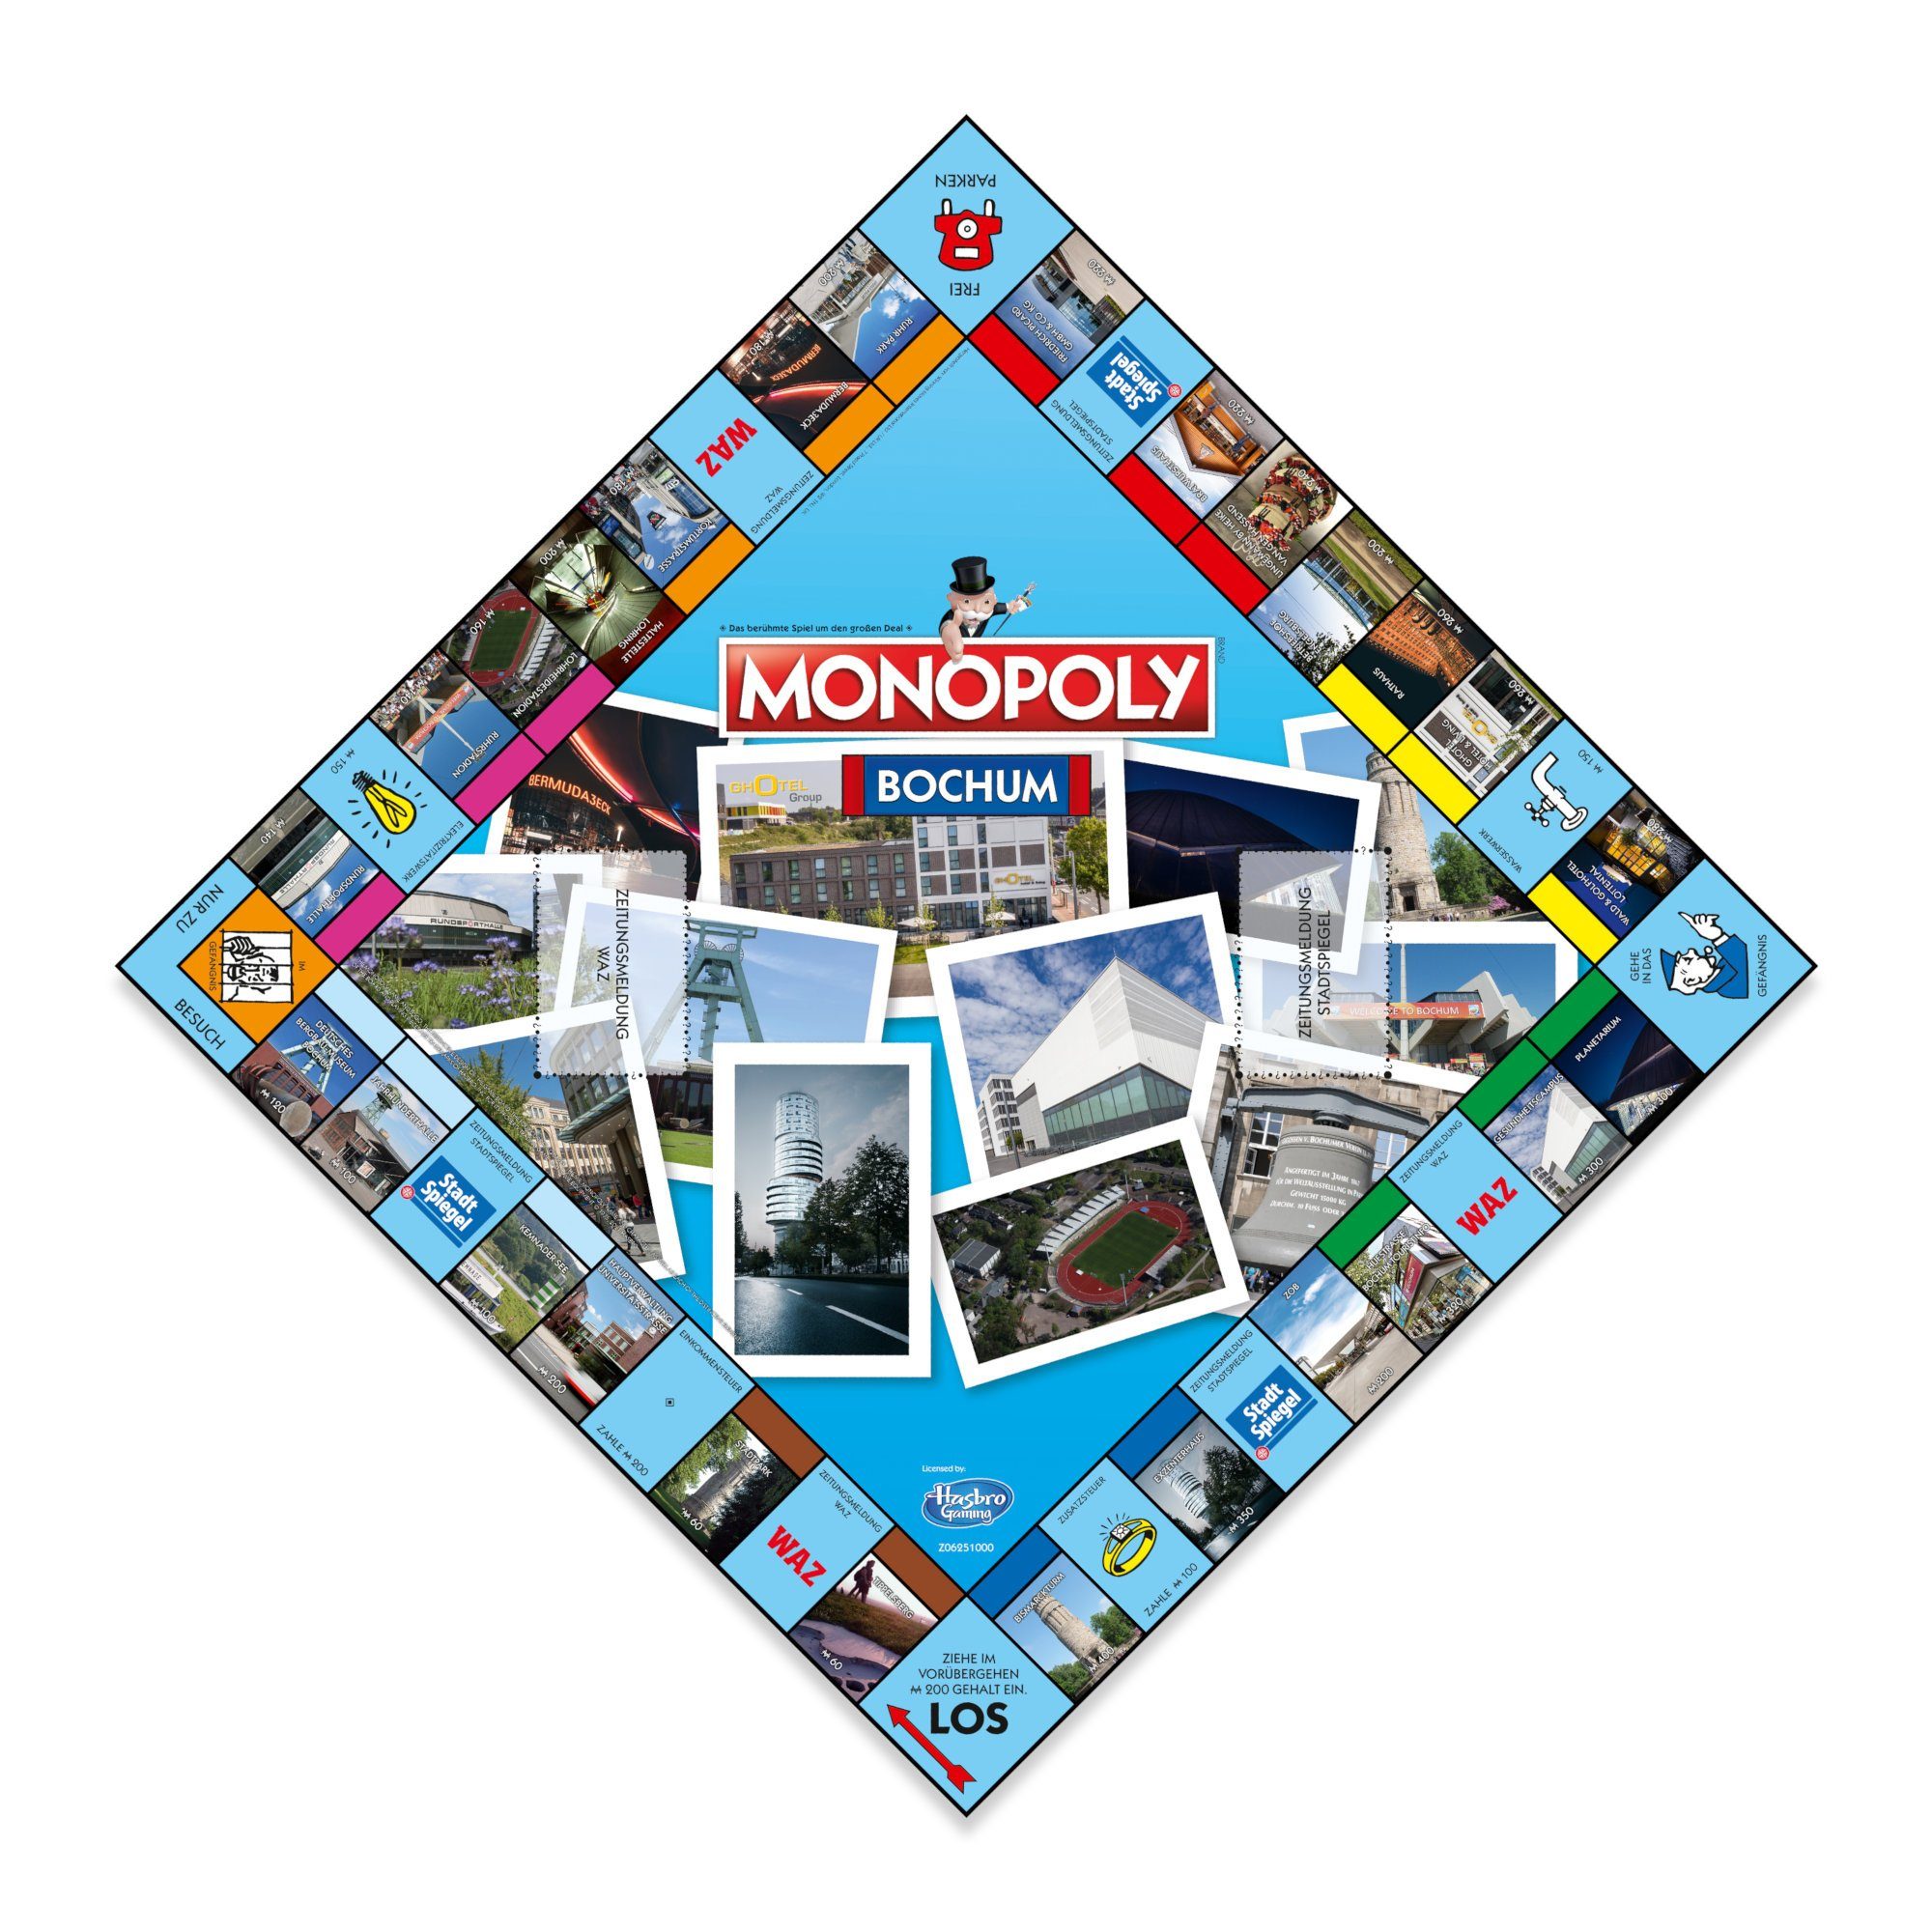 Monopoly Brettspiel Moves Spiel, Bochum Winning